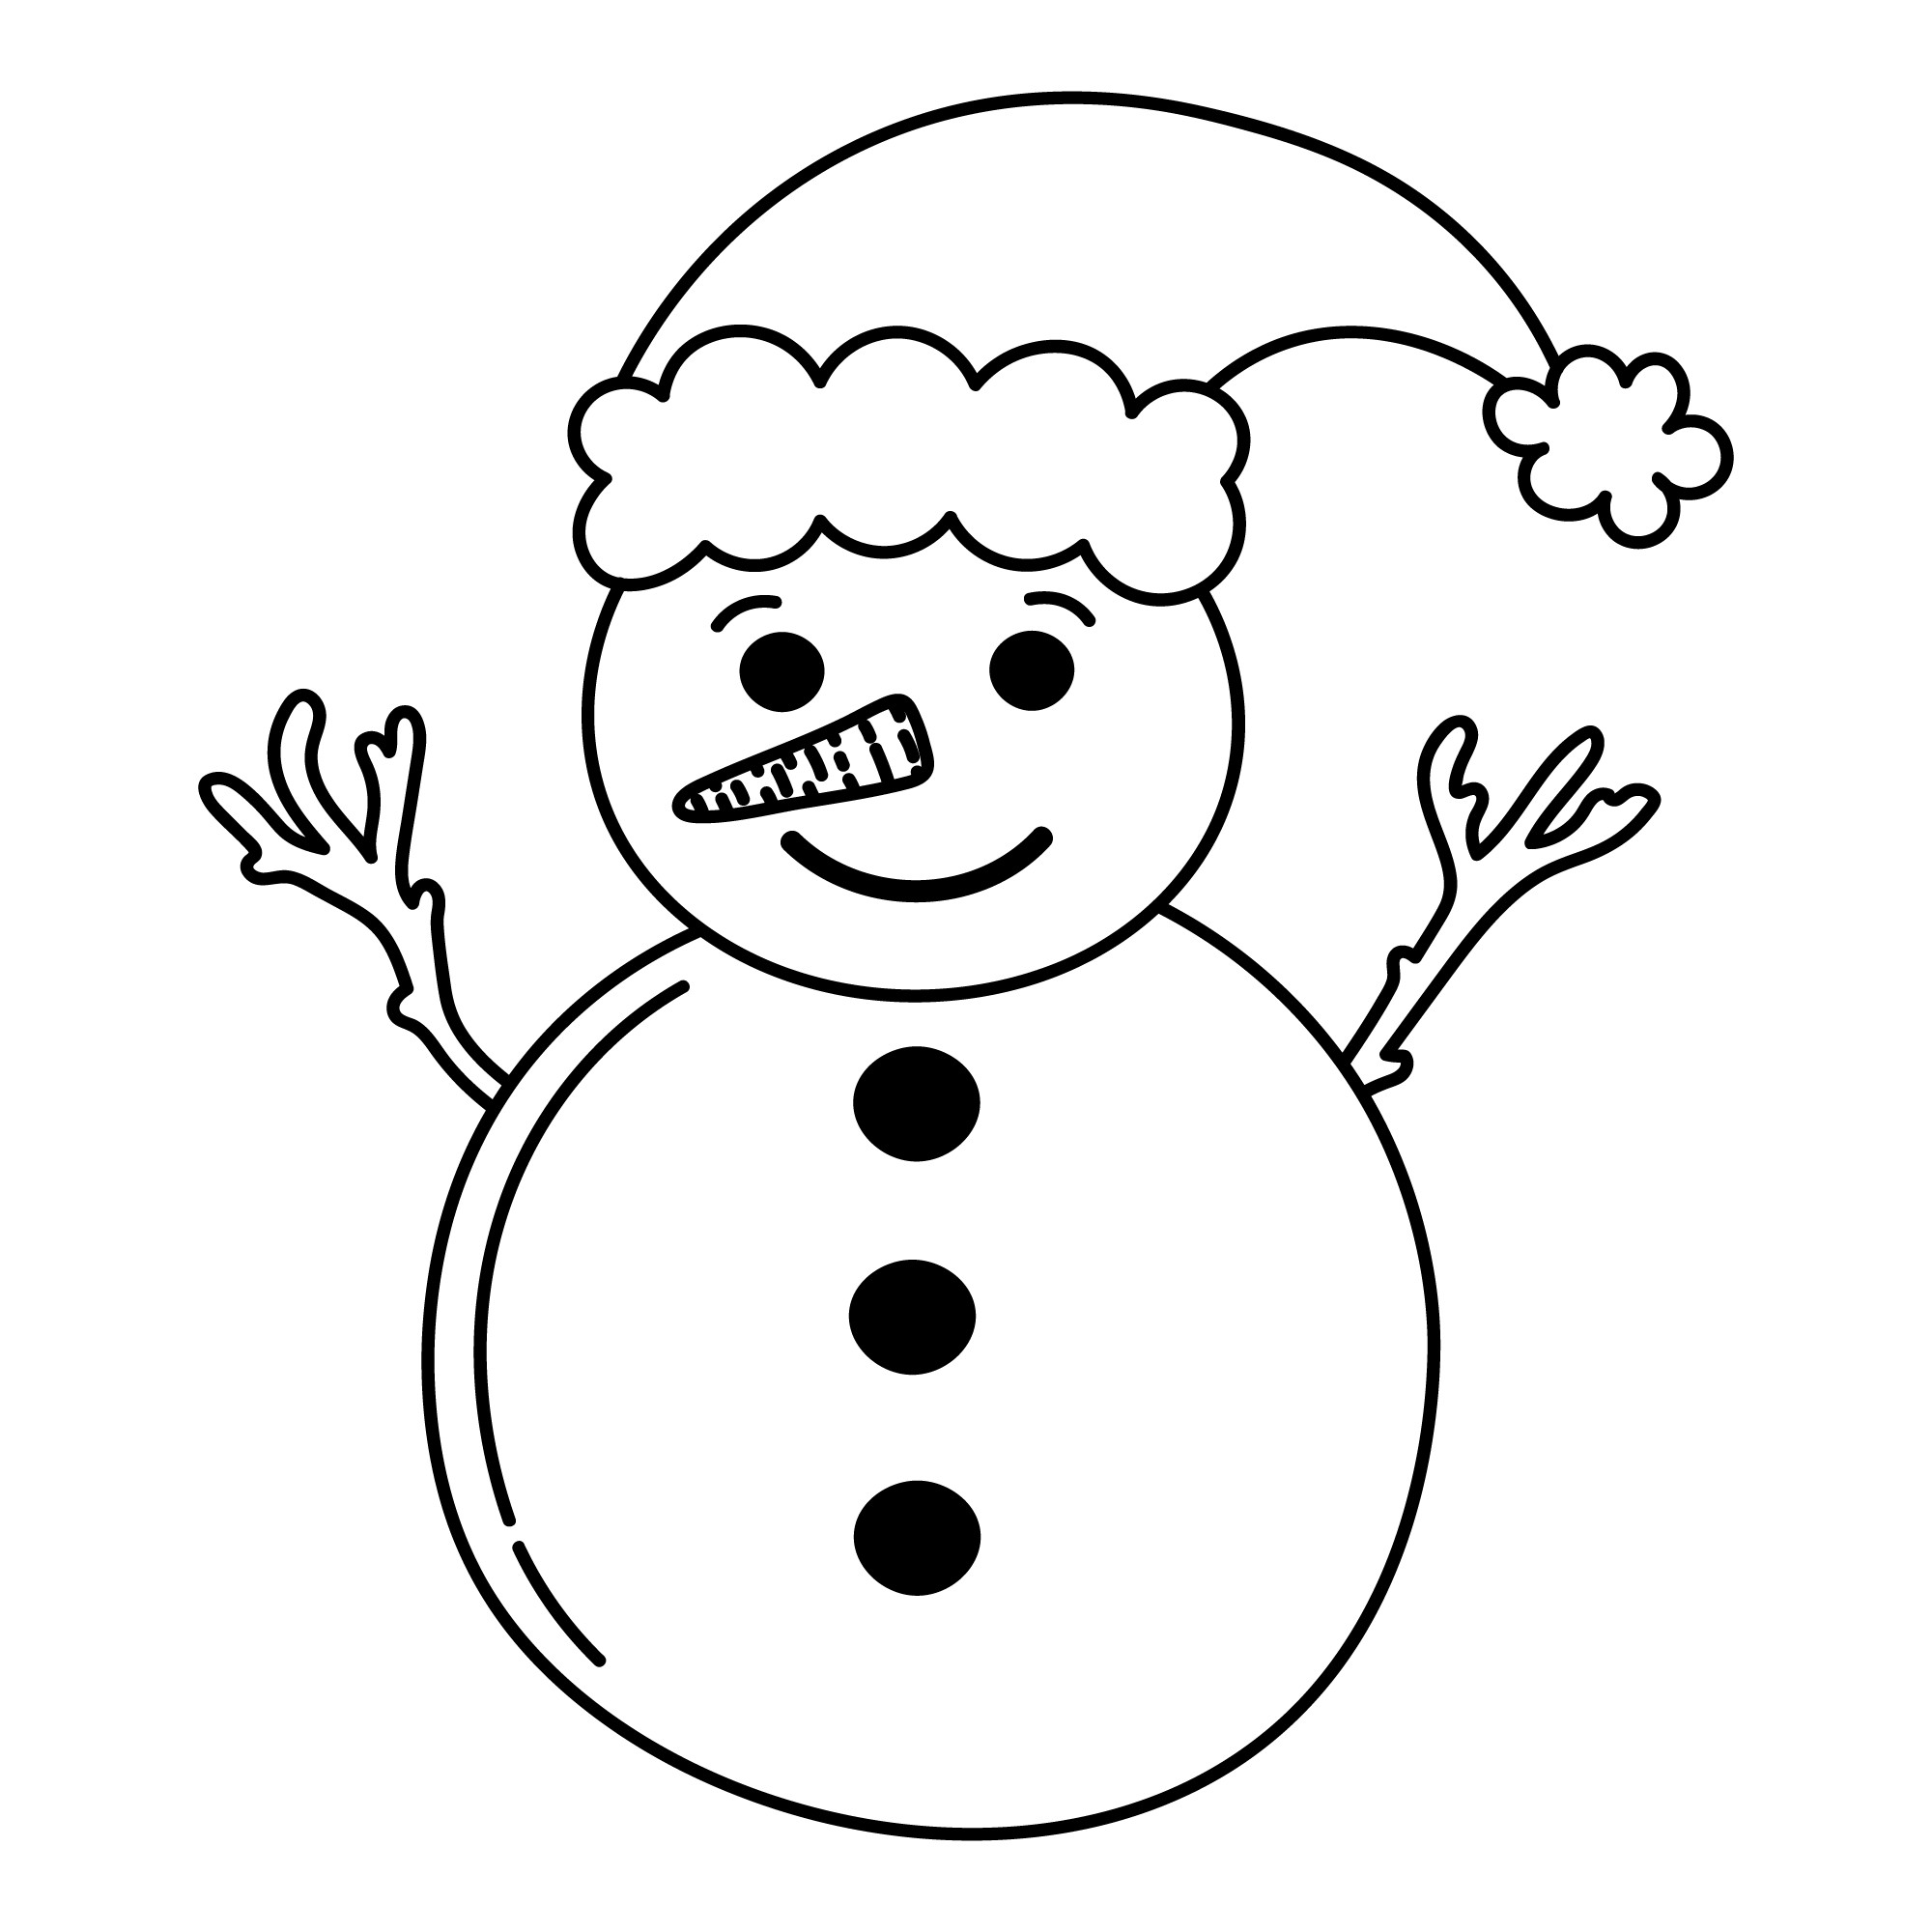 Раскраска для детей: забавный снеговик с чепчиком